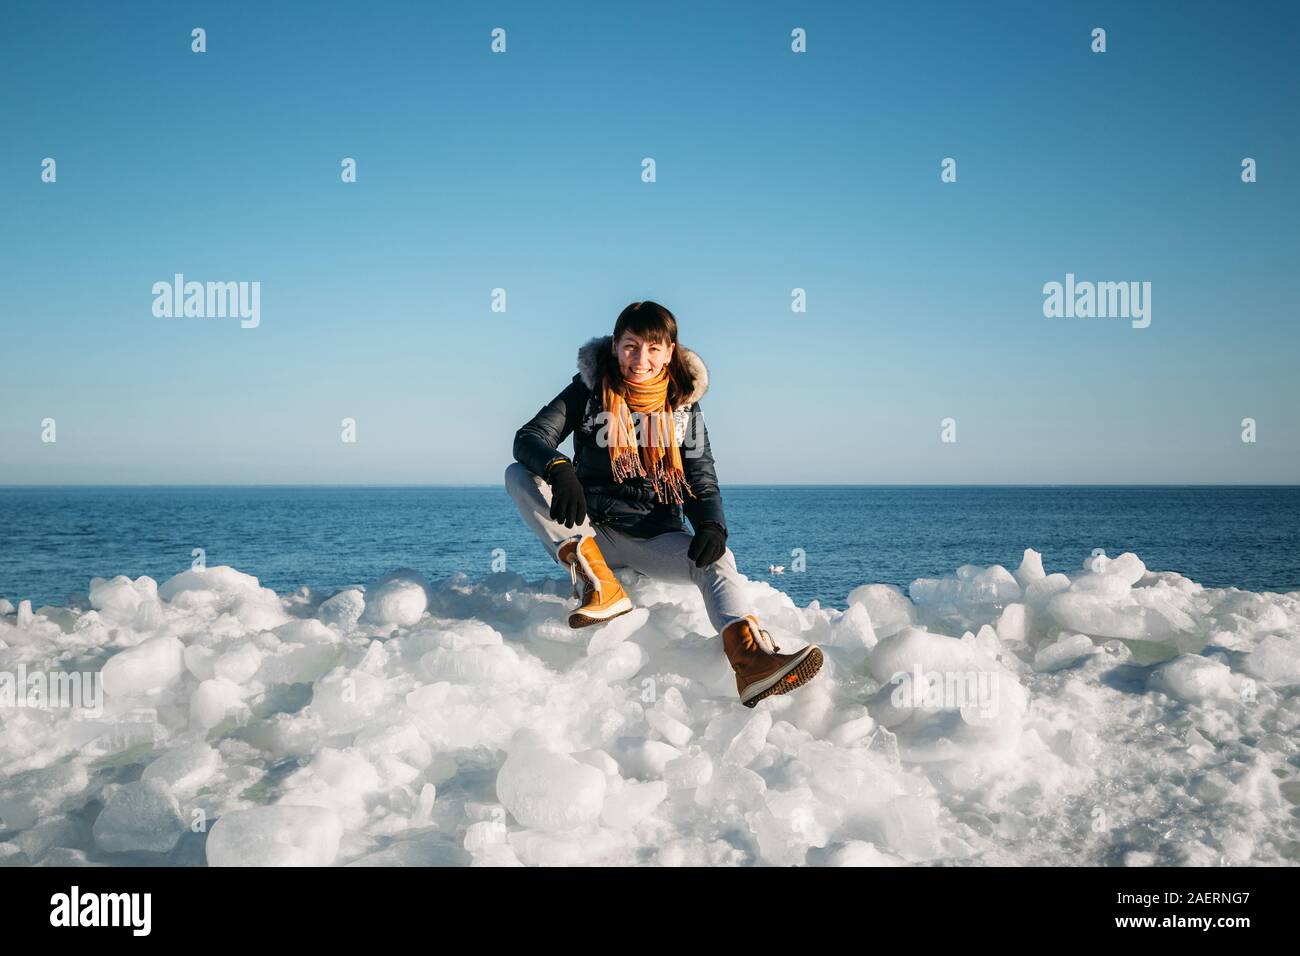 Young smiling woman sitting on a haut de la glace de mer congelés blocs sur une côte de la mer, avec un ciel bleu à l'arrière-plan, à frosty journée ensoleillée Banque D'Images